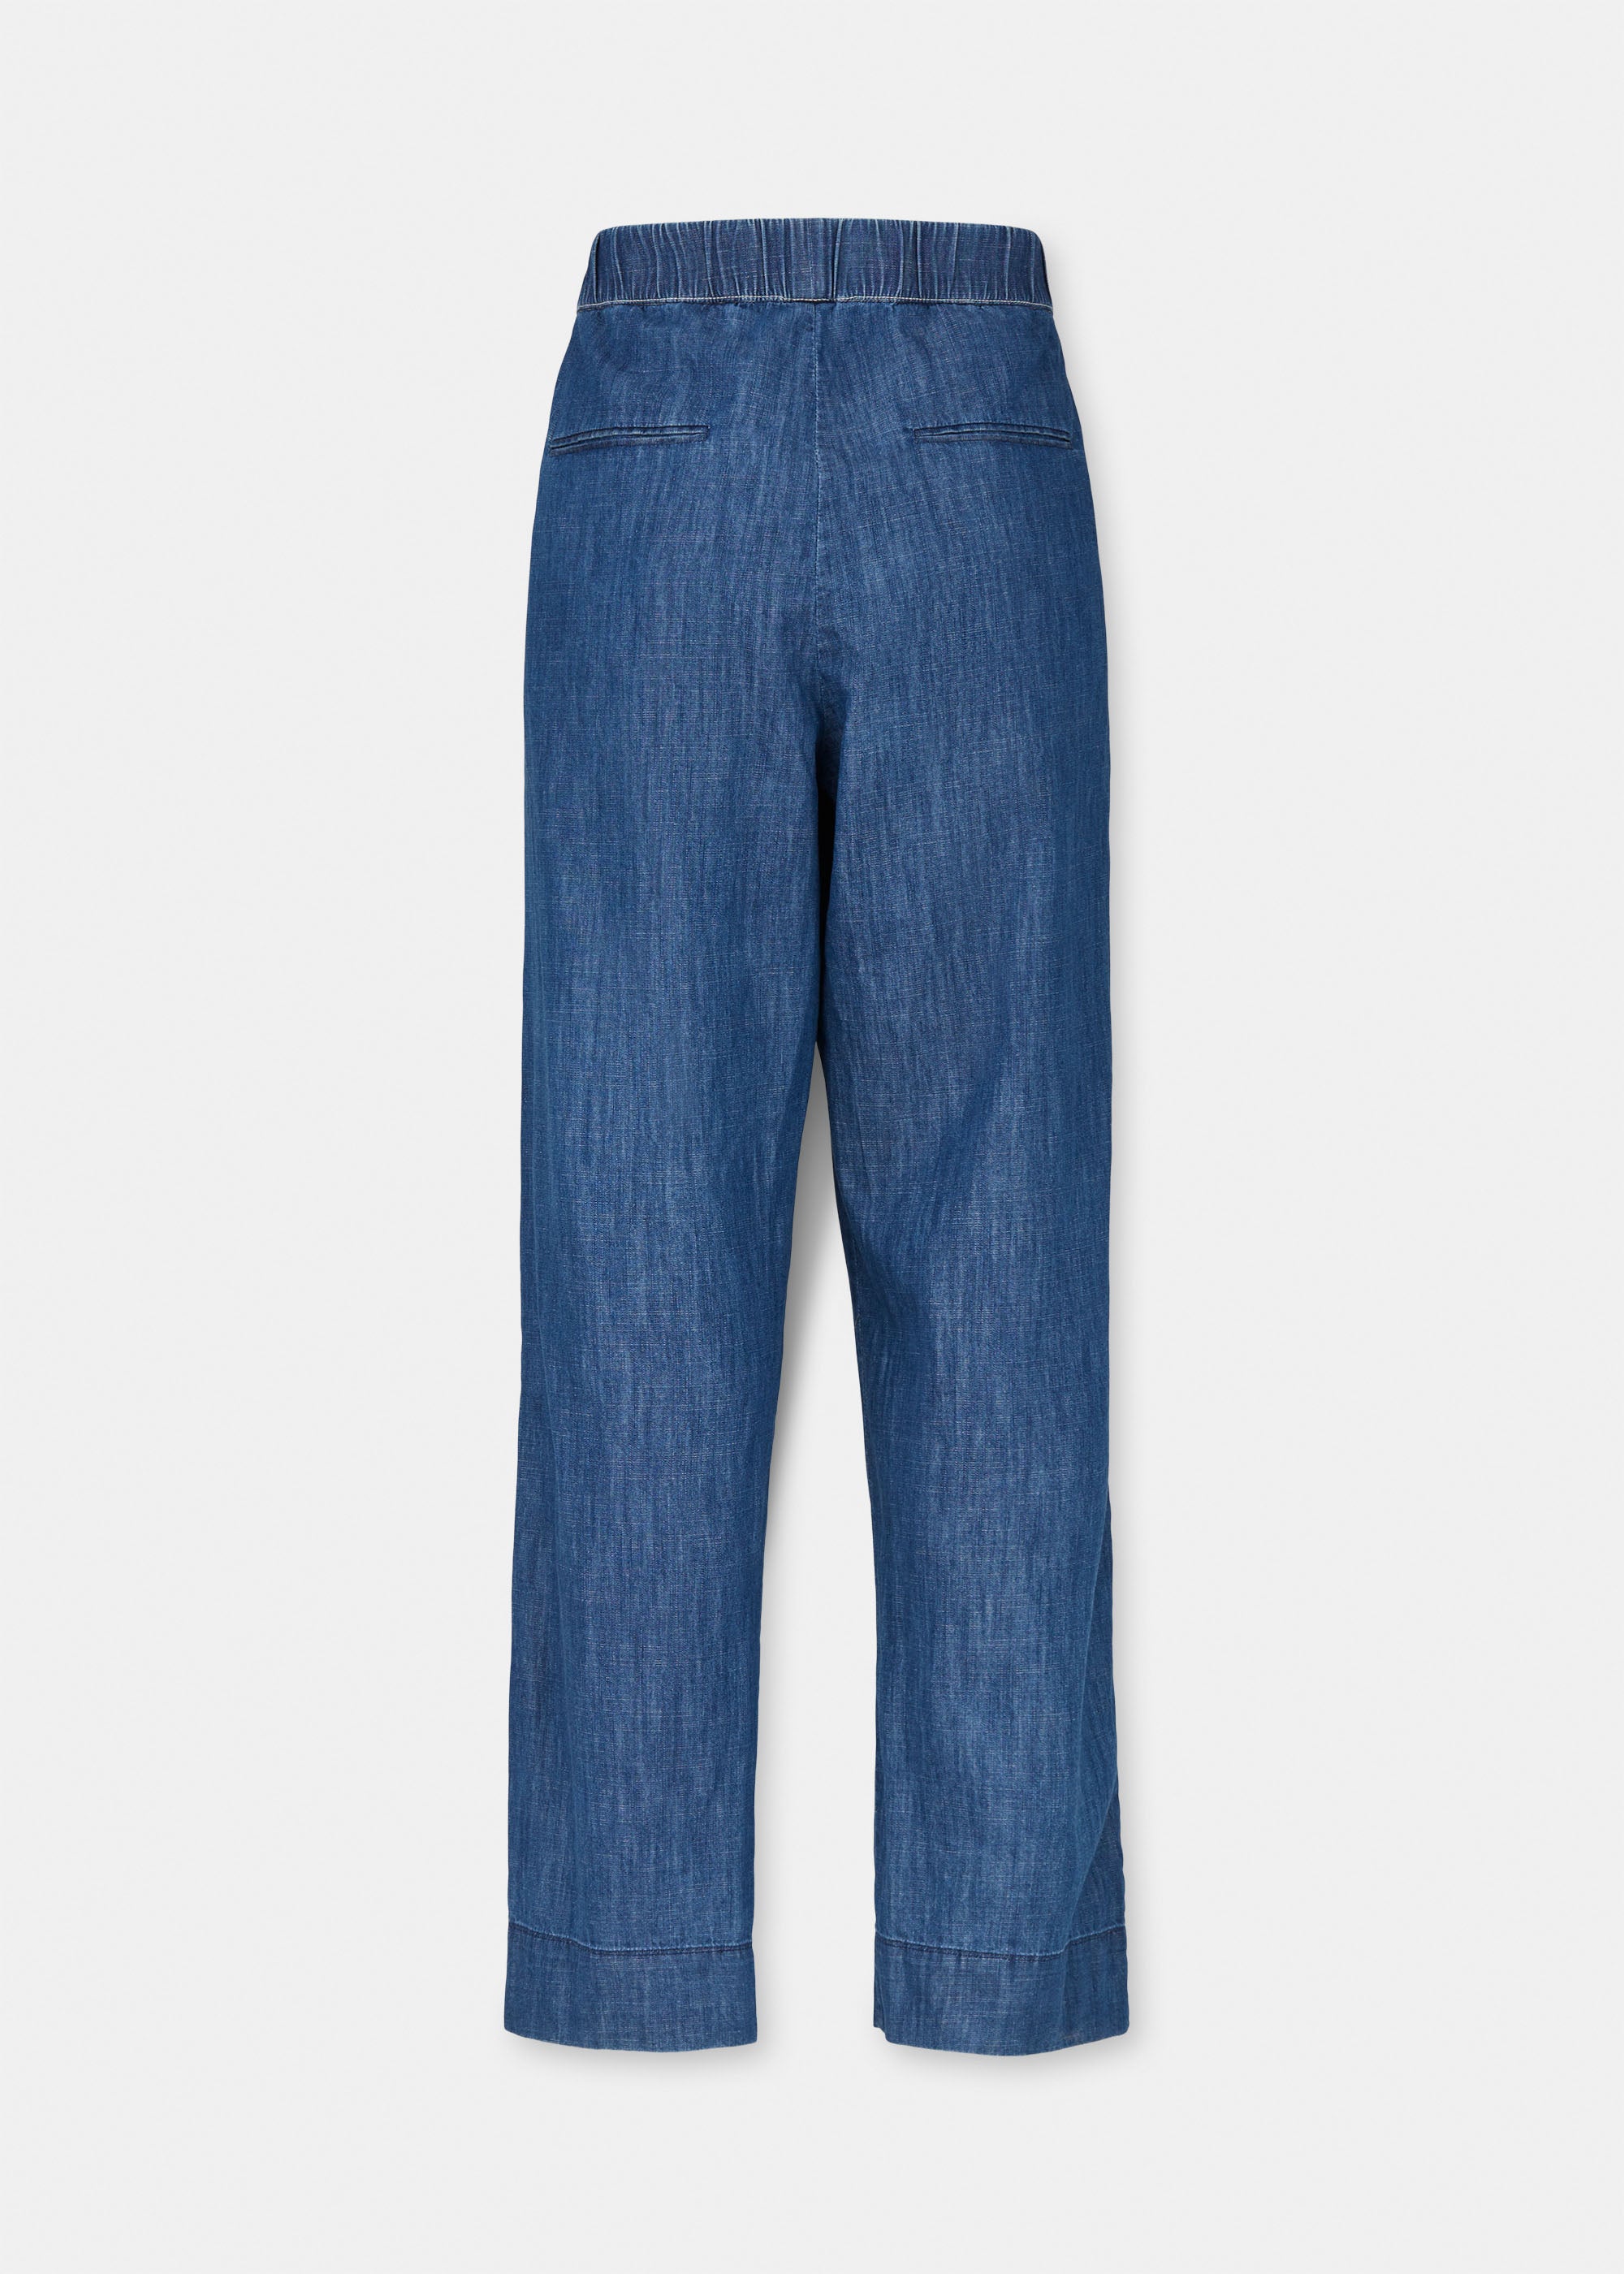 Miles pant denim | Blue Jeans